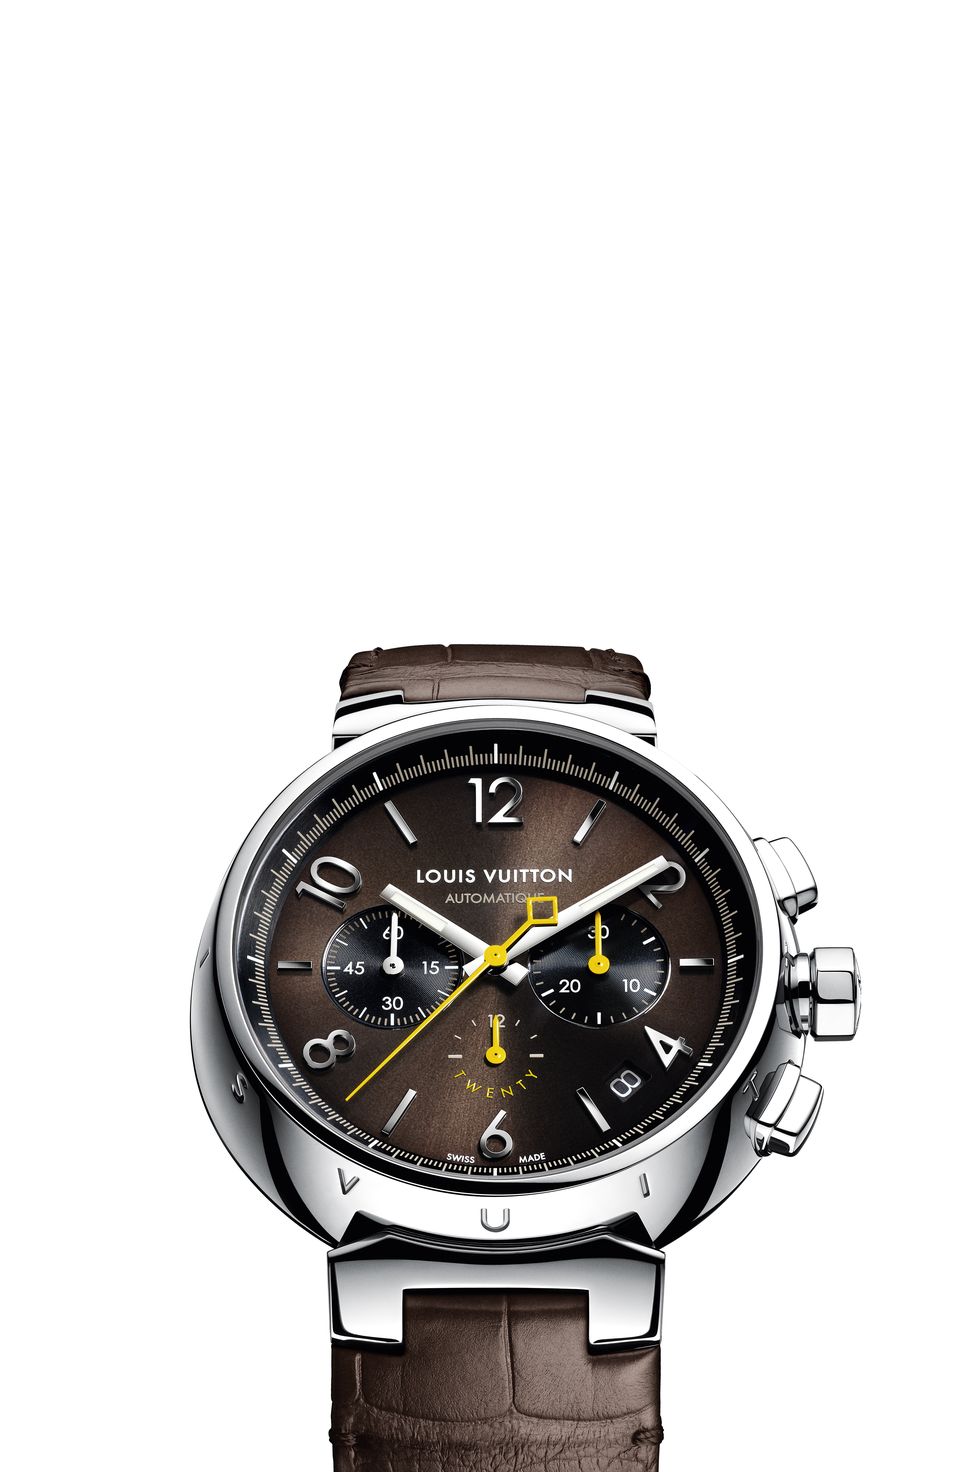 Lot - Vintage Louis Vuitton Chronometer Watch